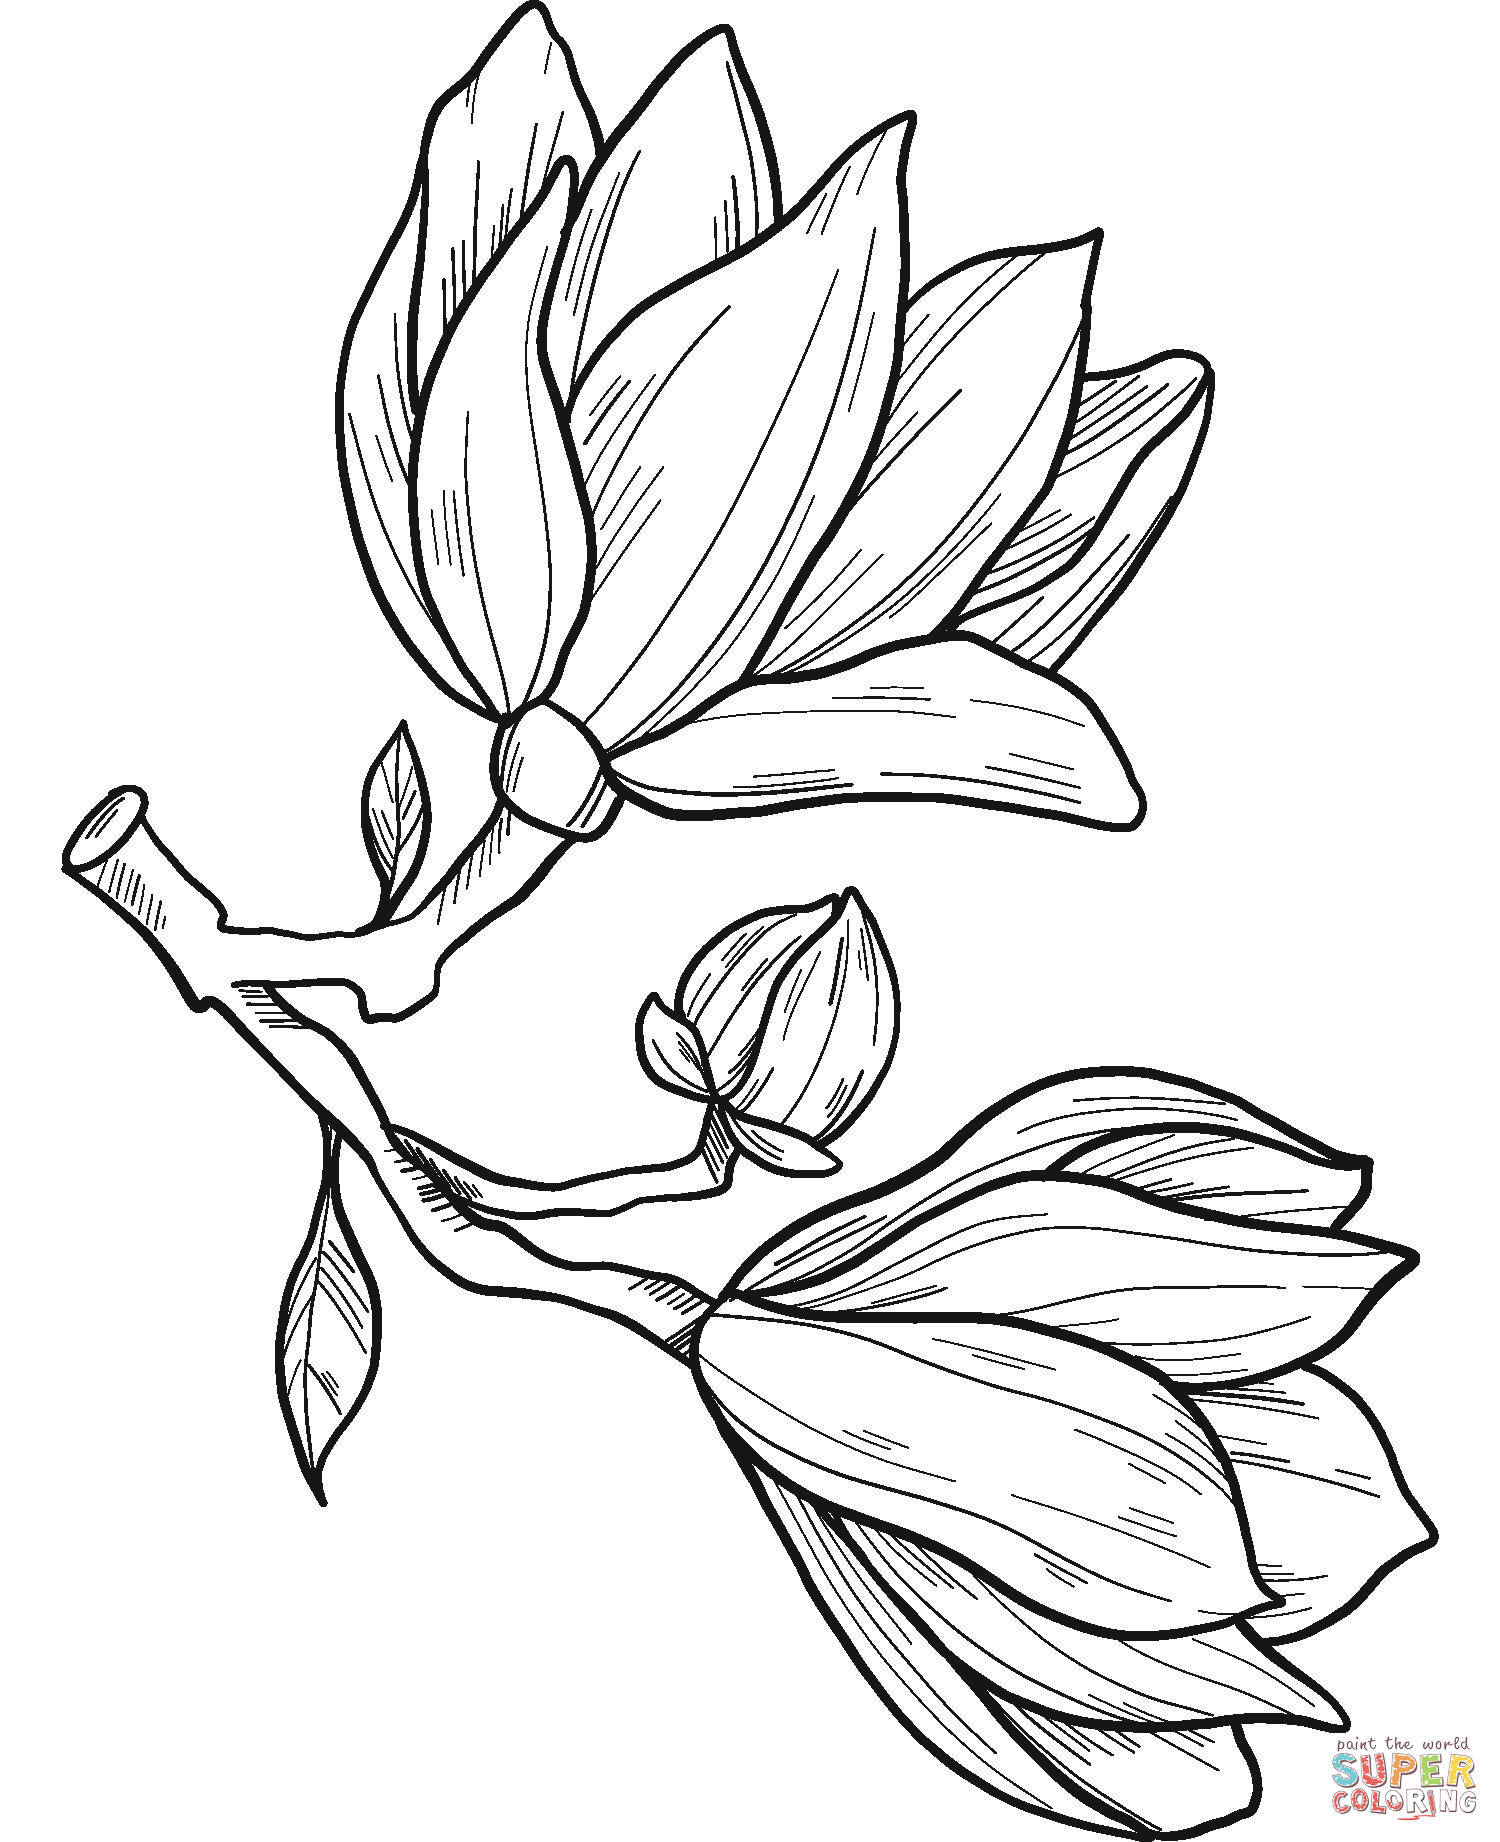 Magnolienblüten von Magnolia